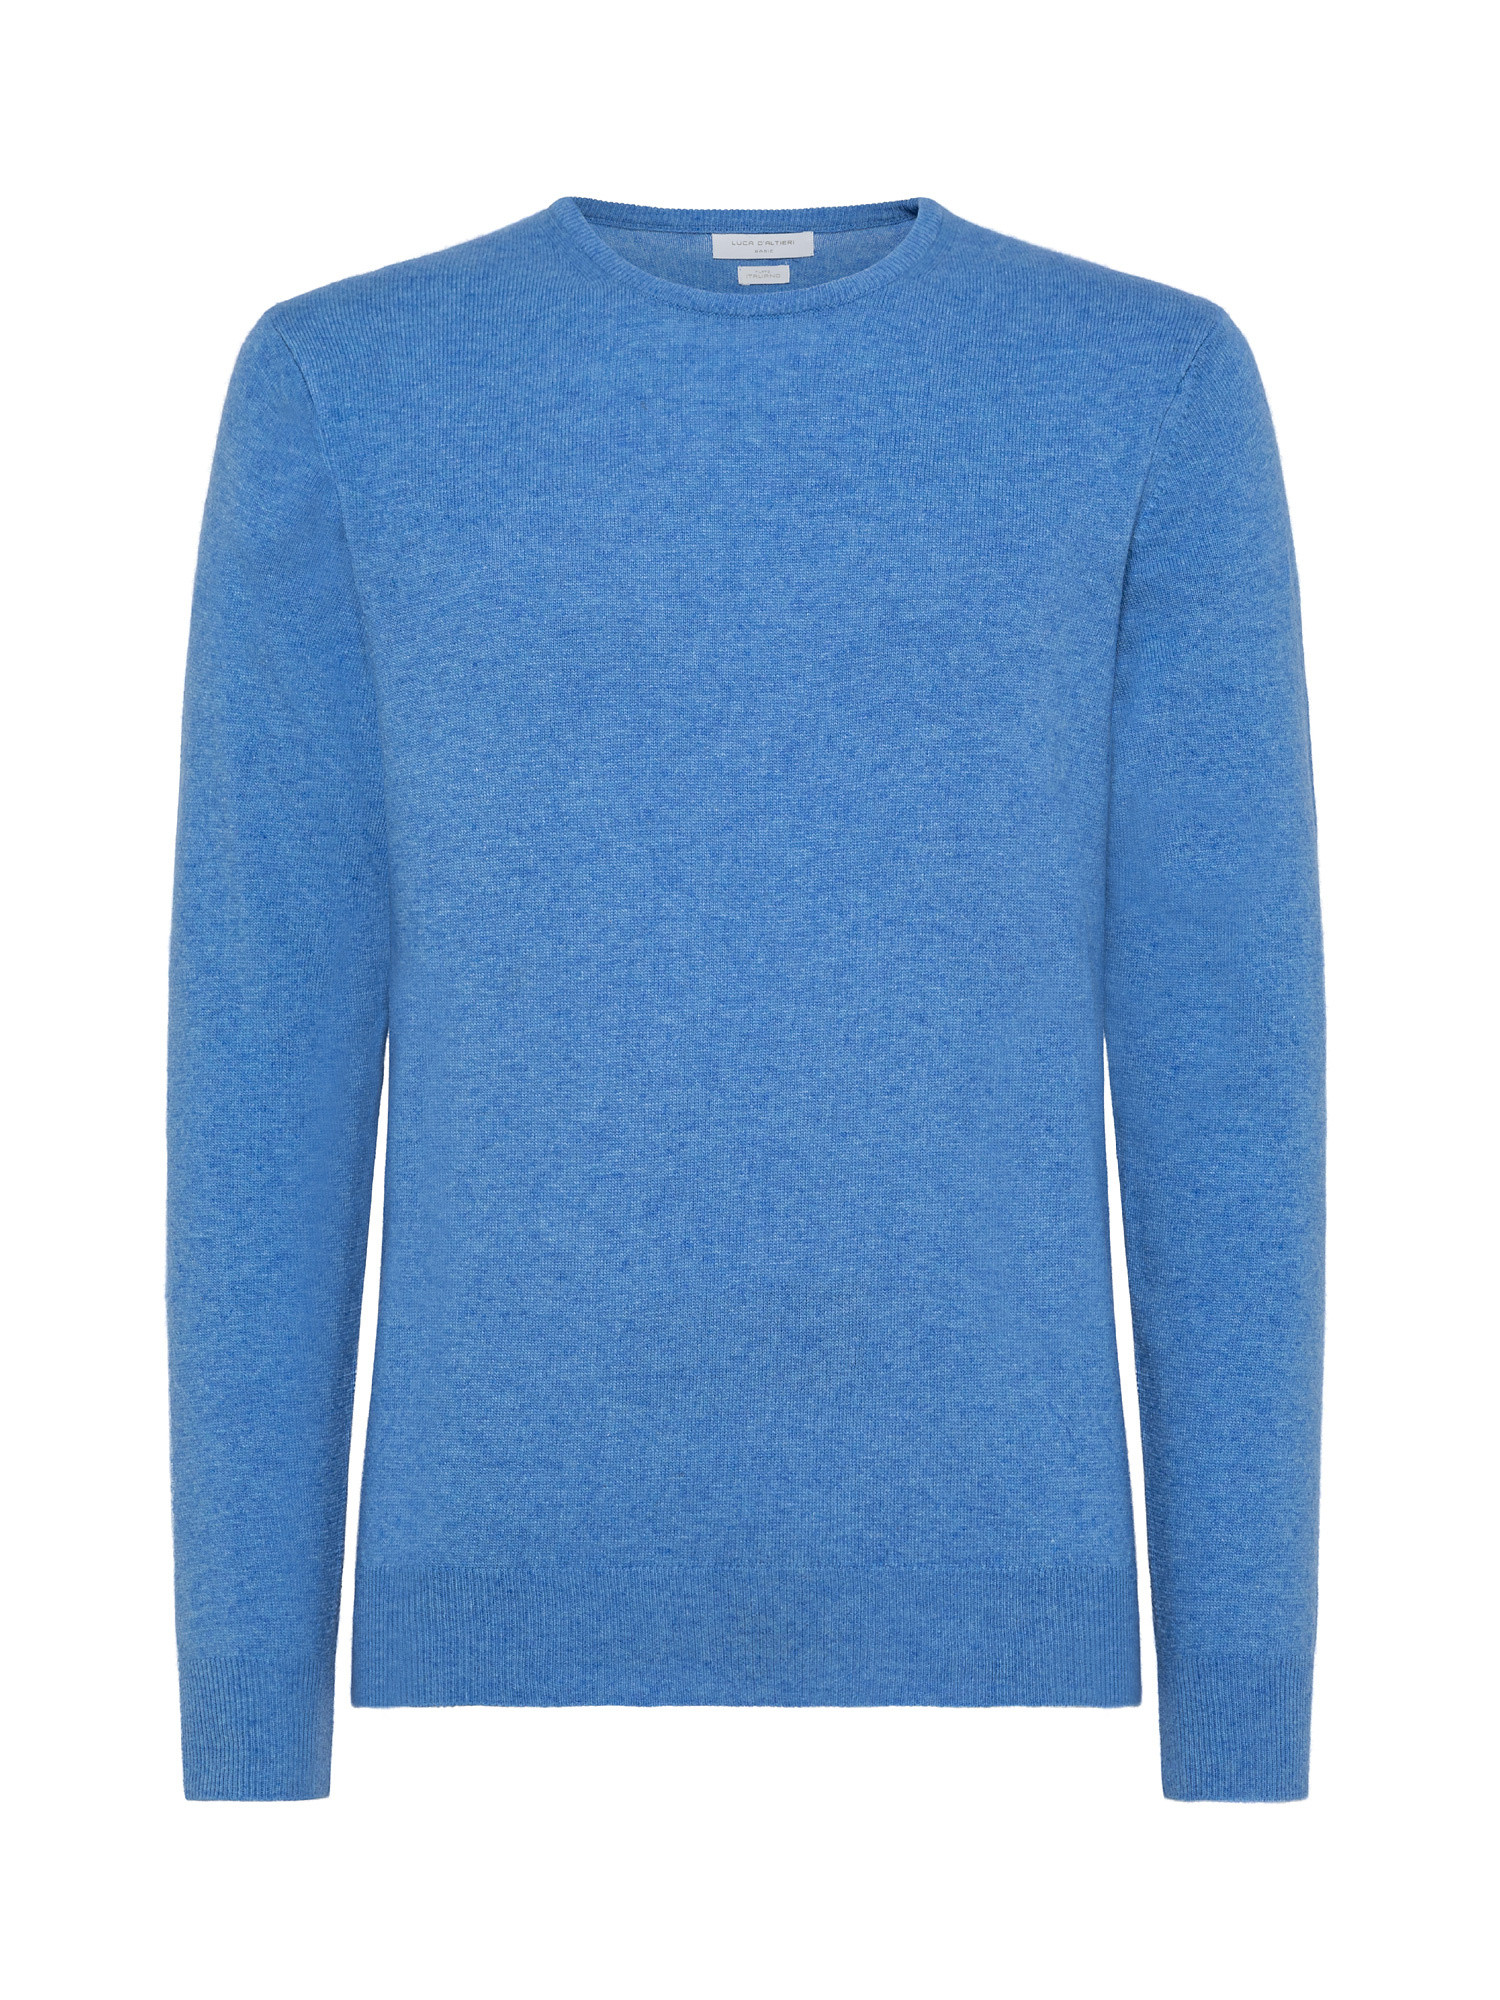 Basic cashmere blend pullover, Light Blue, large image number 0